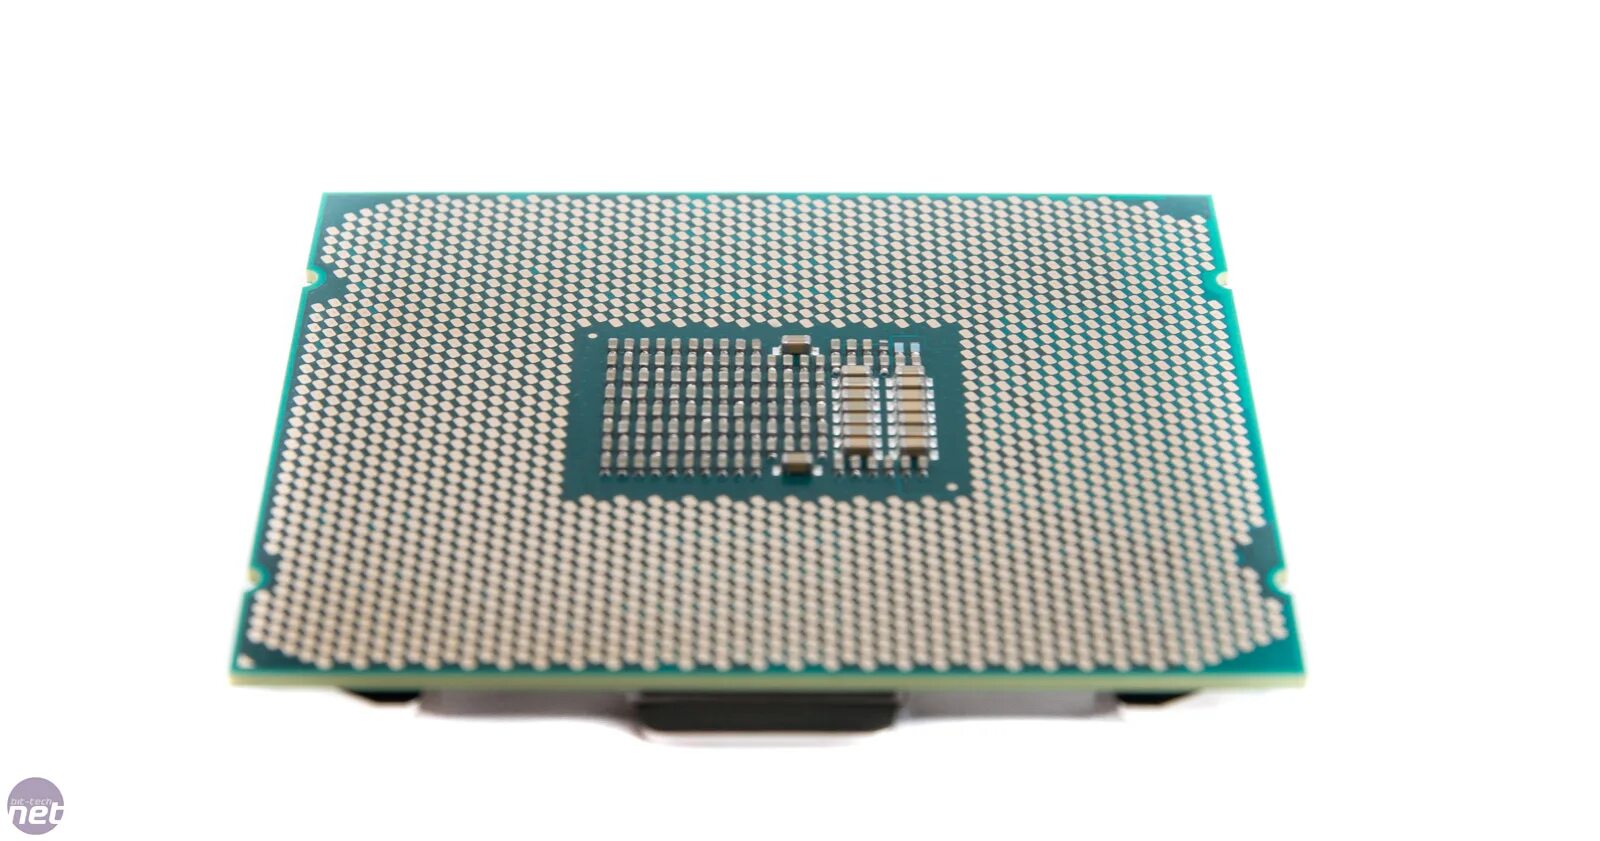 Core i9 7900x. Intel i9 7900. Intel Core i9-7920x. Intel Core 2 extreme x7900 CPU.